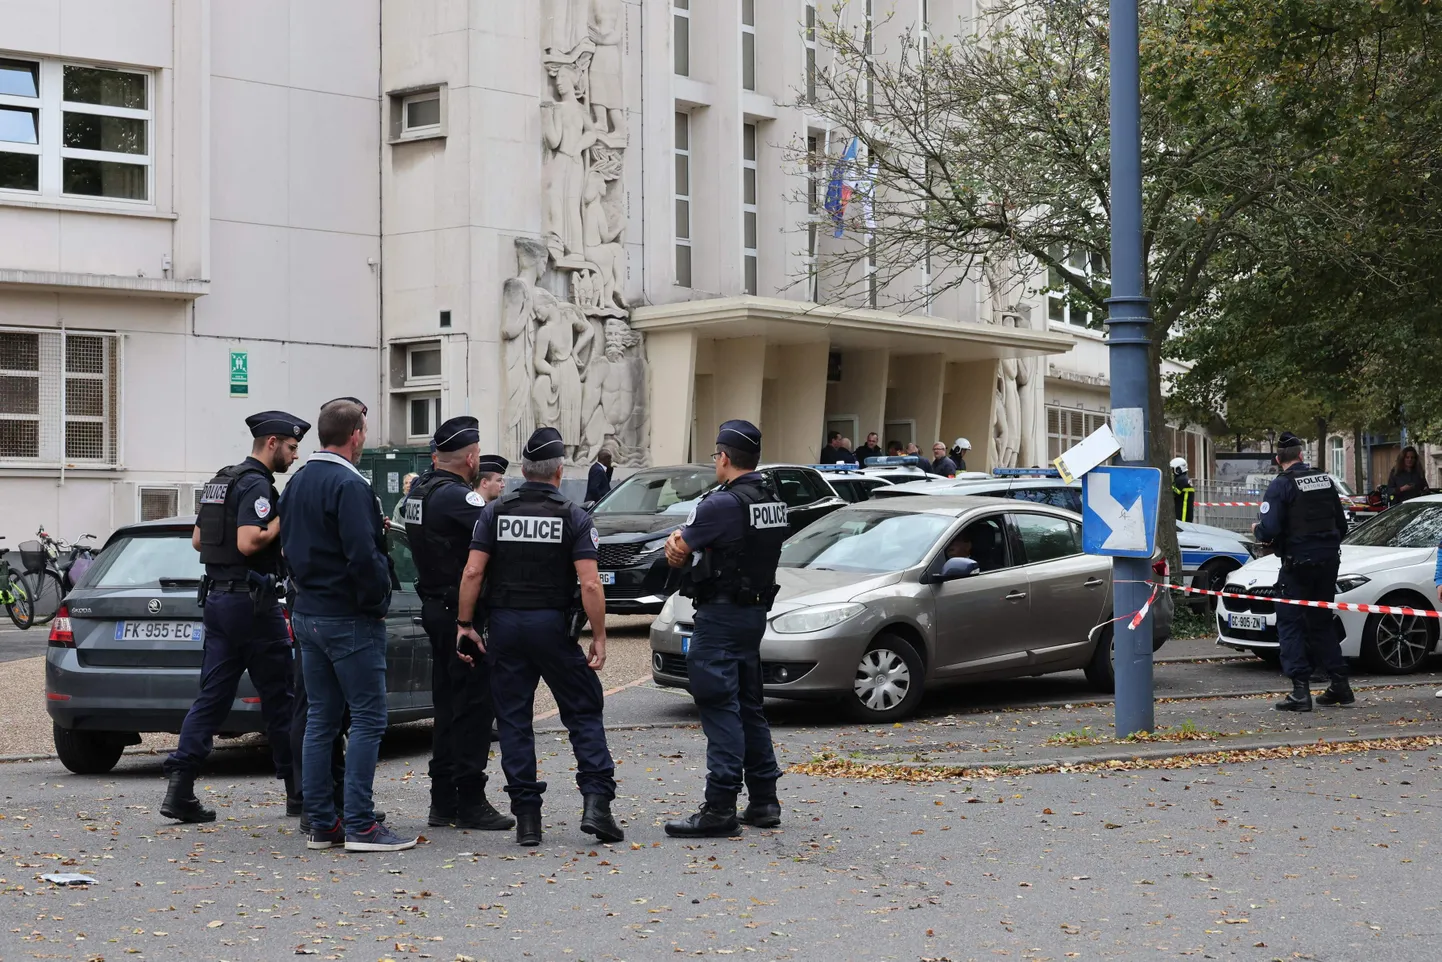 Prantsuse politseiametnikud seisavad Arrasis Gambetta keskkooli ees, kus õpetaja sai noarünnakus surma ja kaks inimest raskelt haavata